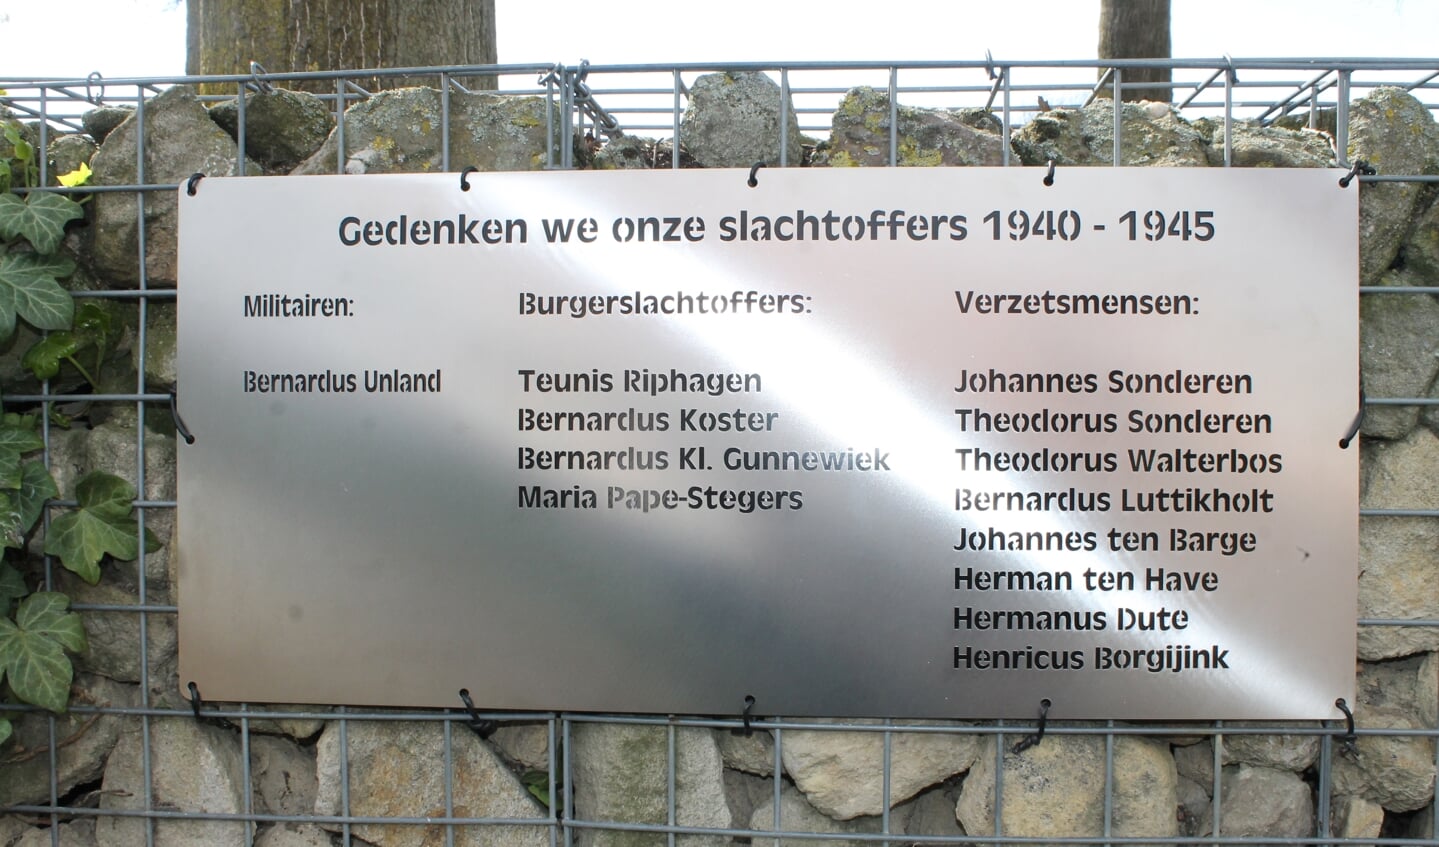 De herdenkingsplaat met hierop de namen van de slachtoffers 1940-1945. Foto: eigen foto